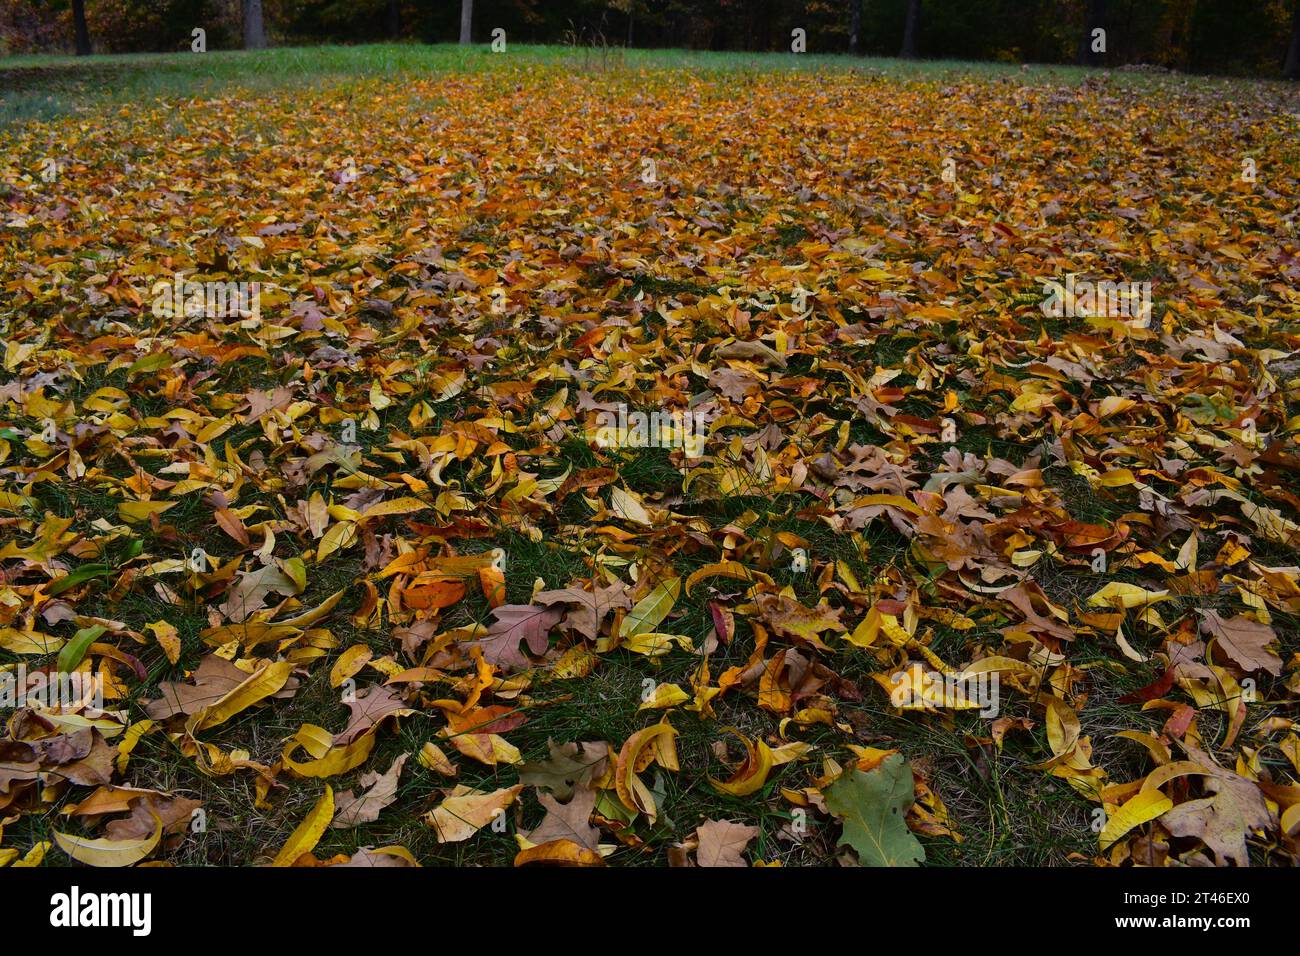 Les feuilles d'automne couvrent une cour dans le Missouri rural. Les feuilles jaunes et brunes contre l'herbe verte peignent une belle image d'automne. Banque D'Images